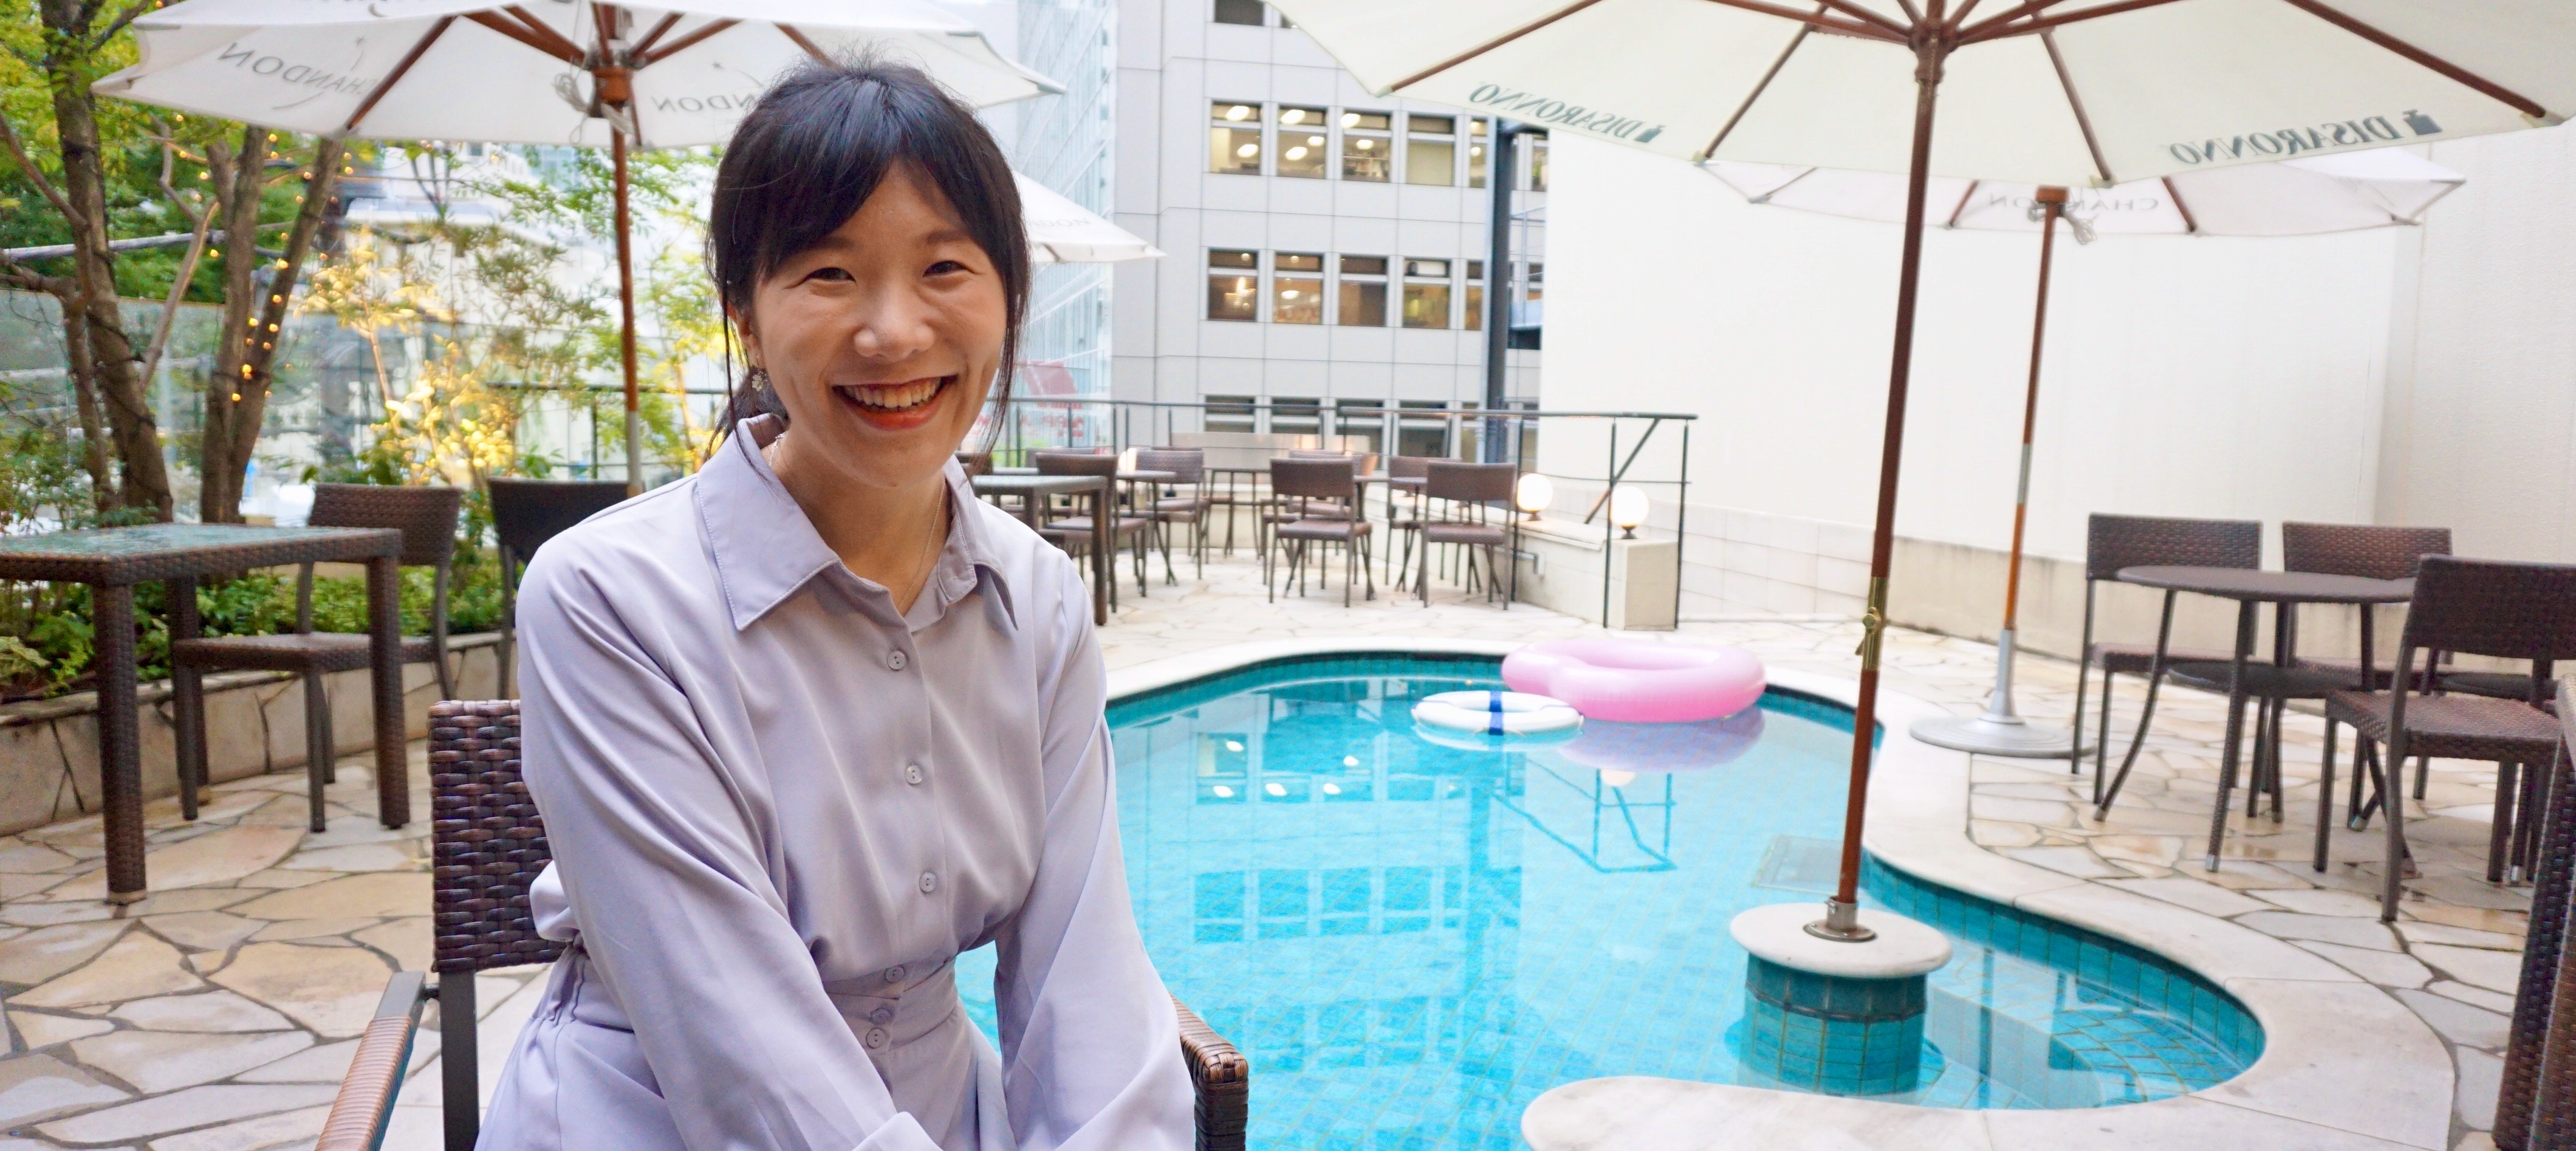 日本で働く台湾人黄千桂さんに、学生時代や就職活動について聞いてみた